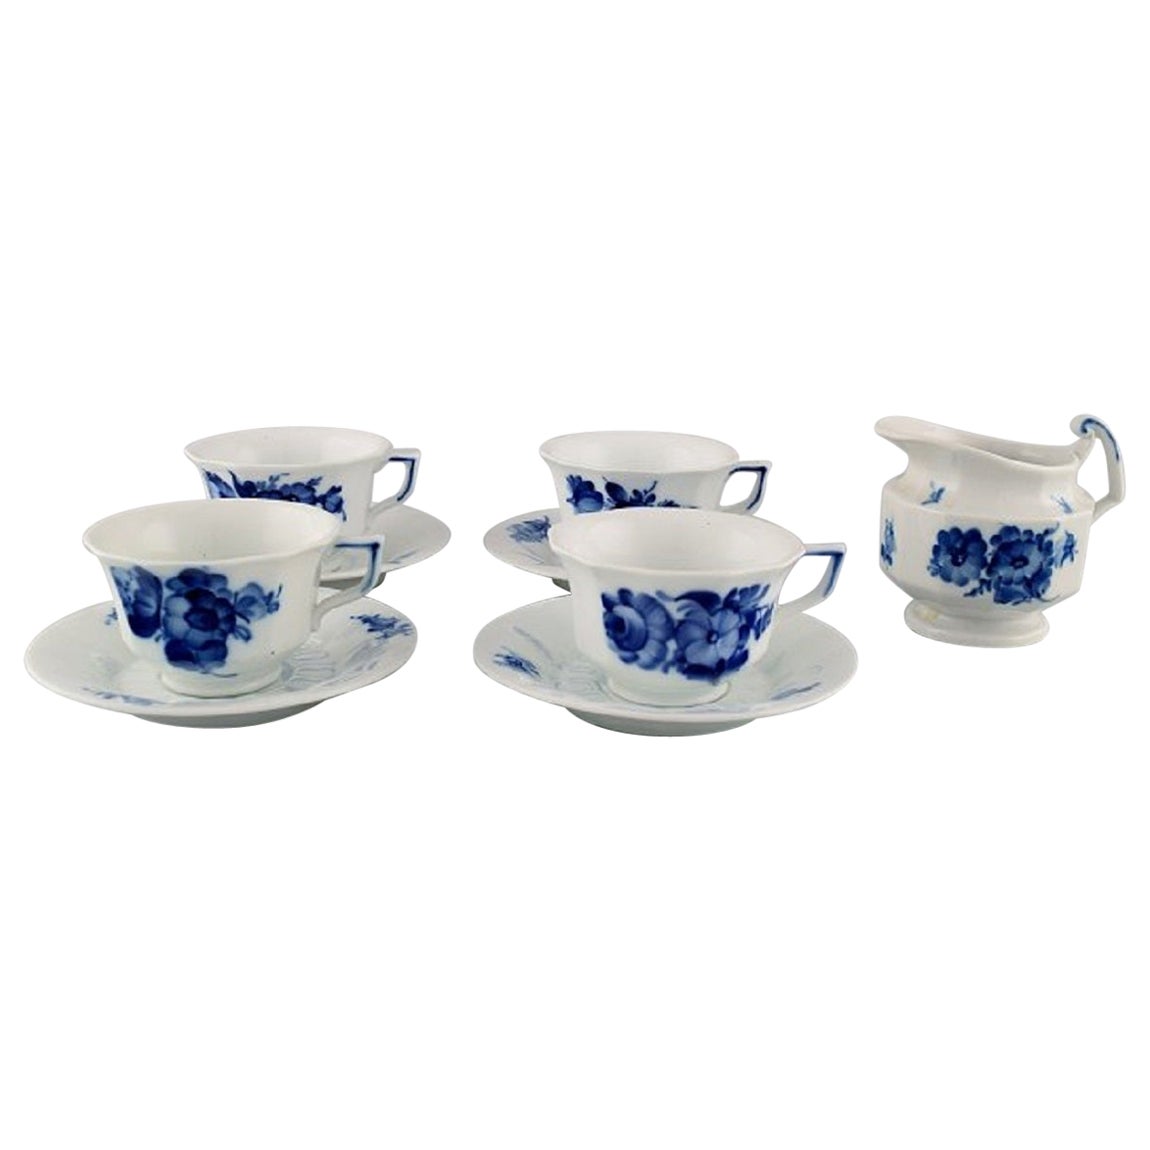 Quatre tasses à café angulaires Royal Copenhagen à fleurs bleues avec soucoupes et crémier